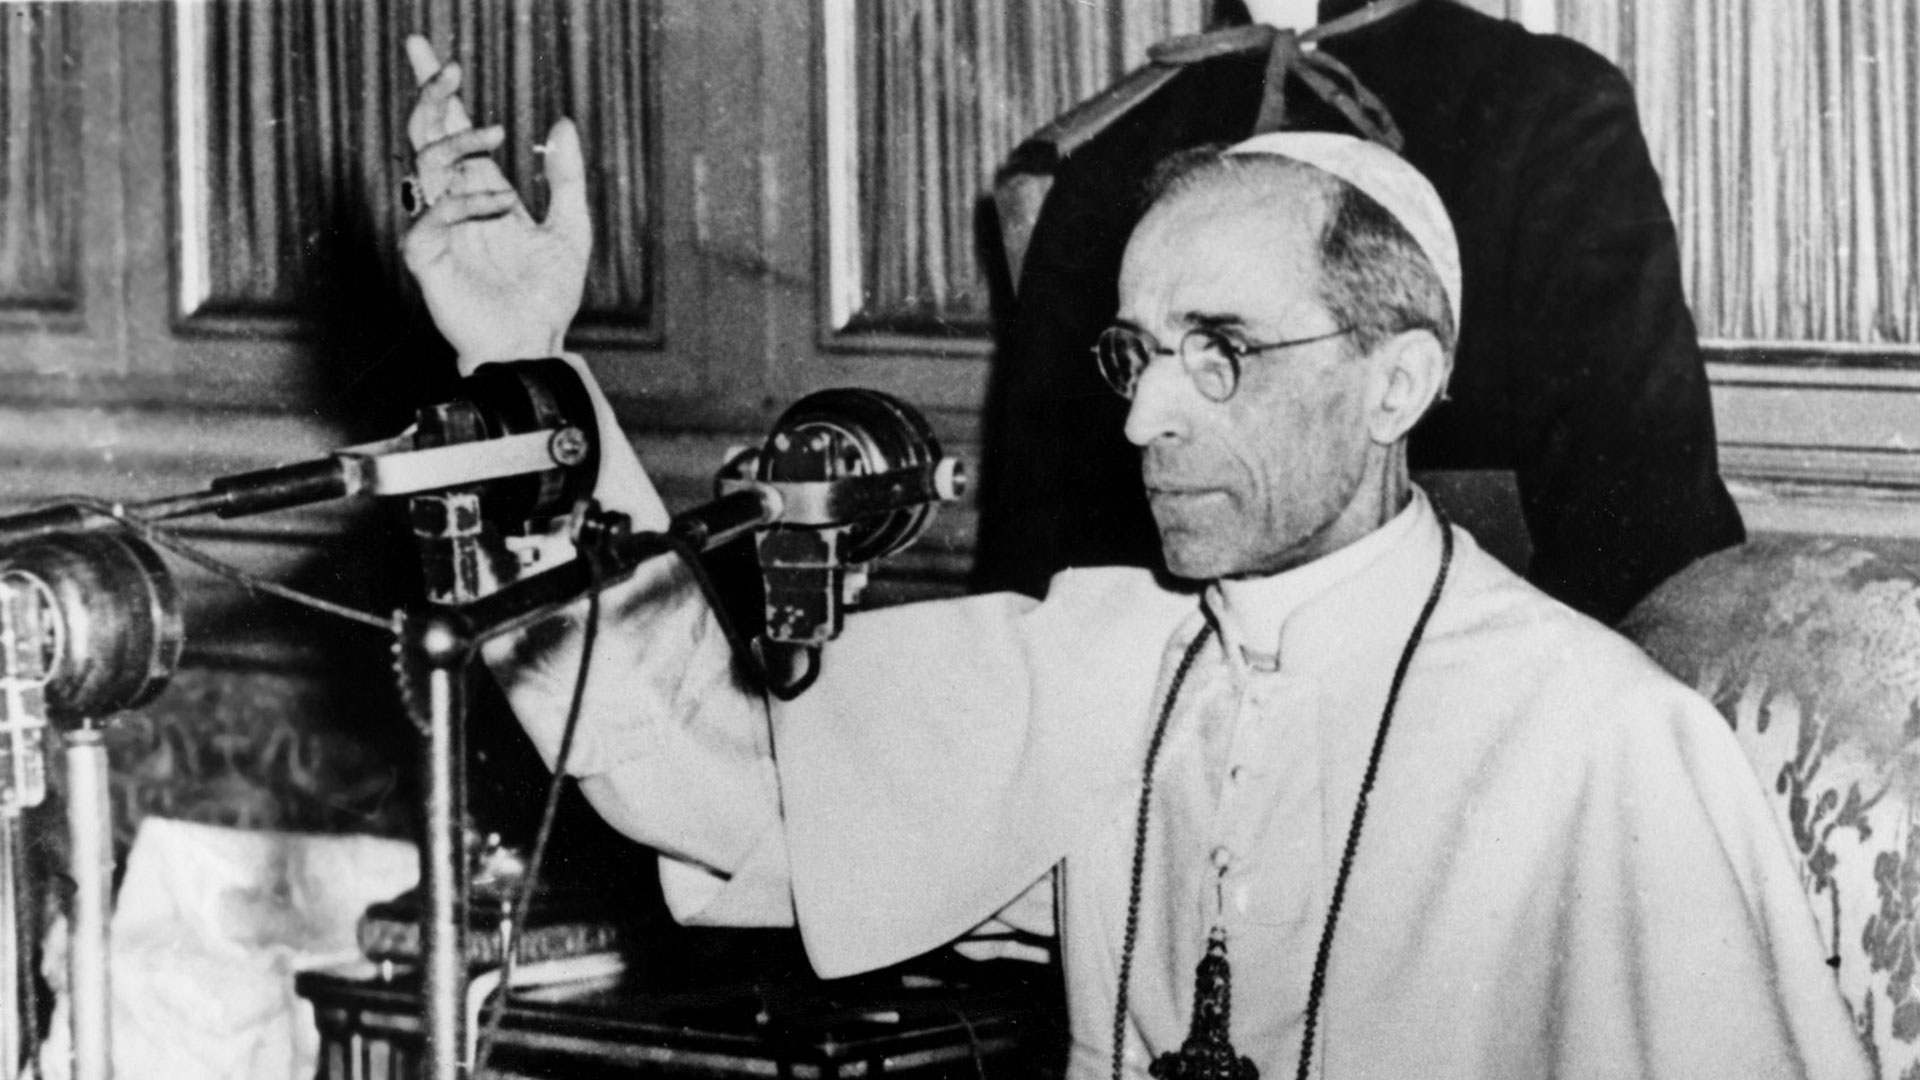 El historiador Hubert Wolf dice que el Papa Pío XII temía el avance comunismo, al que consideraba la mayor amenaza para la Iglesia Católica, y por eso se habría prestado a facilitar la fuga de los nazis